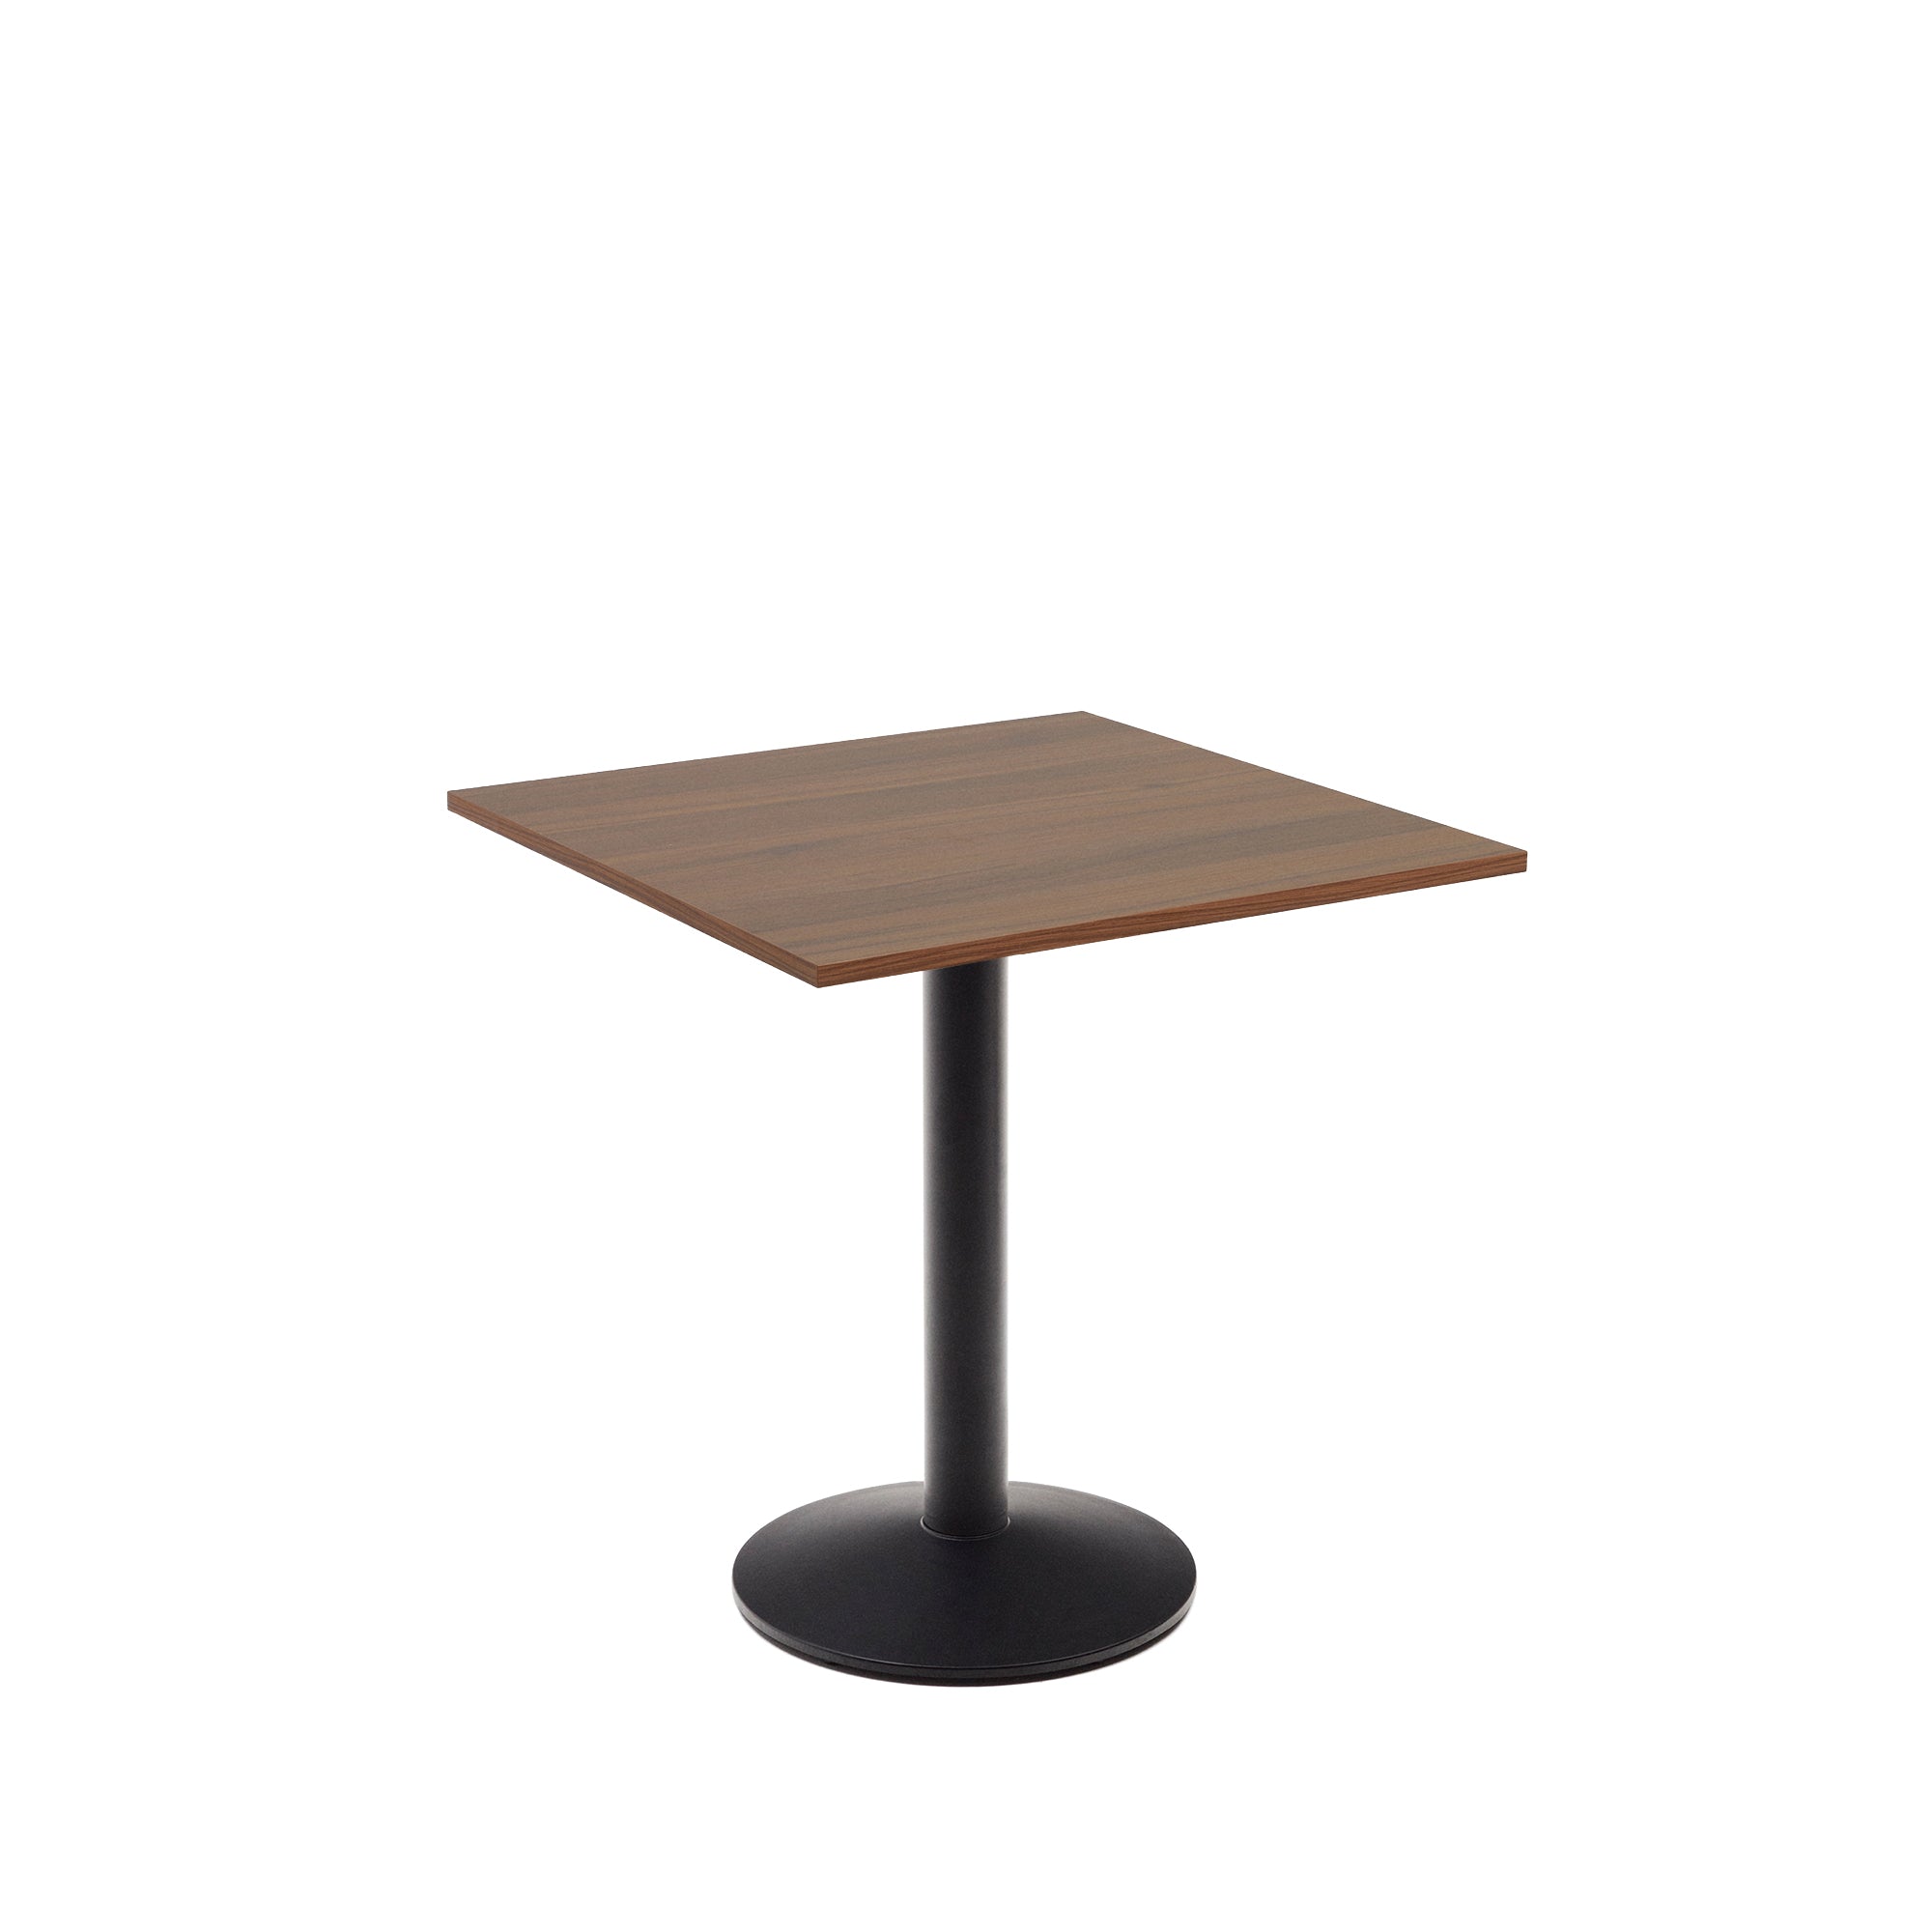 Esilda asztal diófa melaminból, fekete festett fémlábbal, 70 x 70 x 70 cm, 70 x 70 x 70 cm